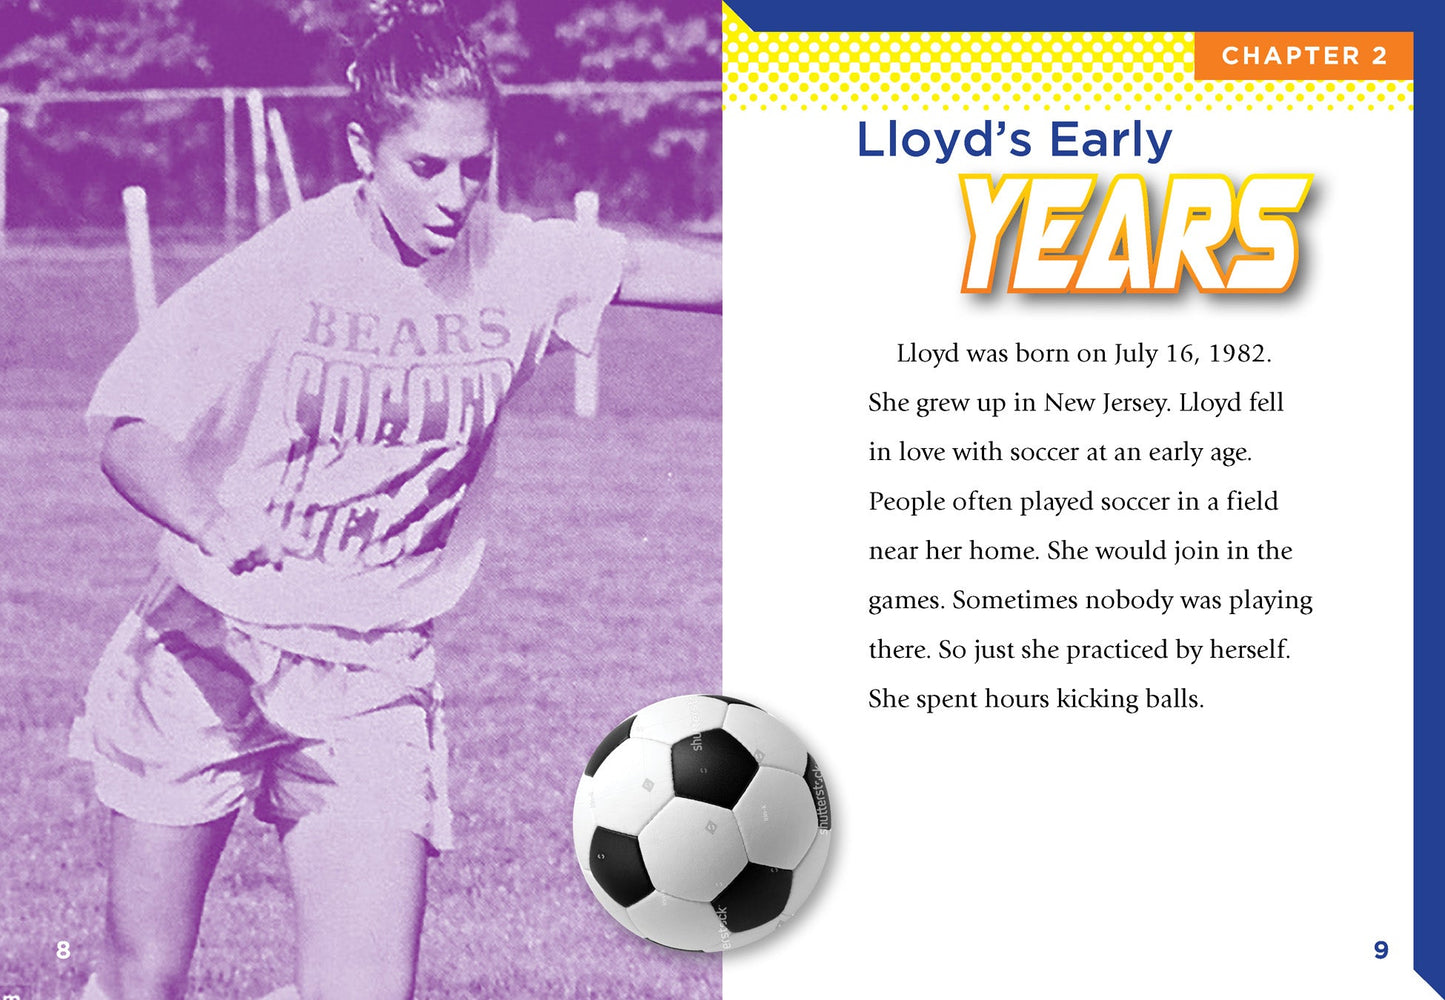 Player Profiles: Carli Lloyd